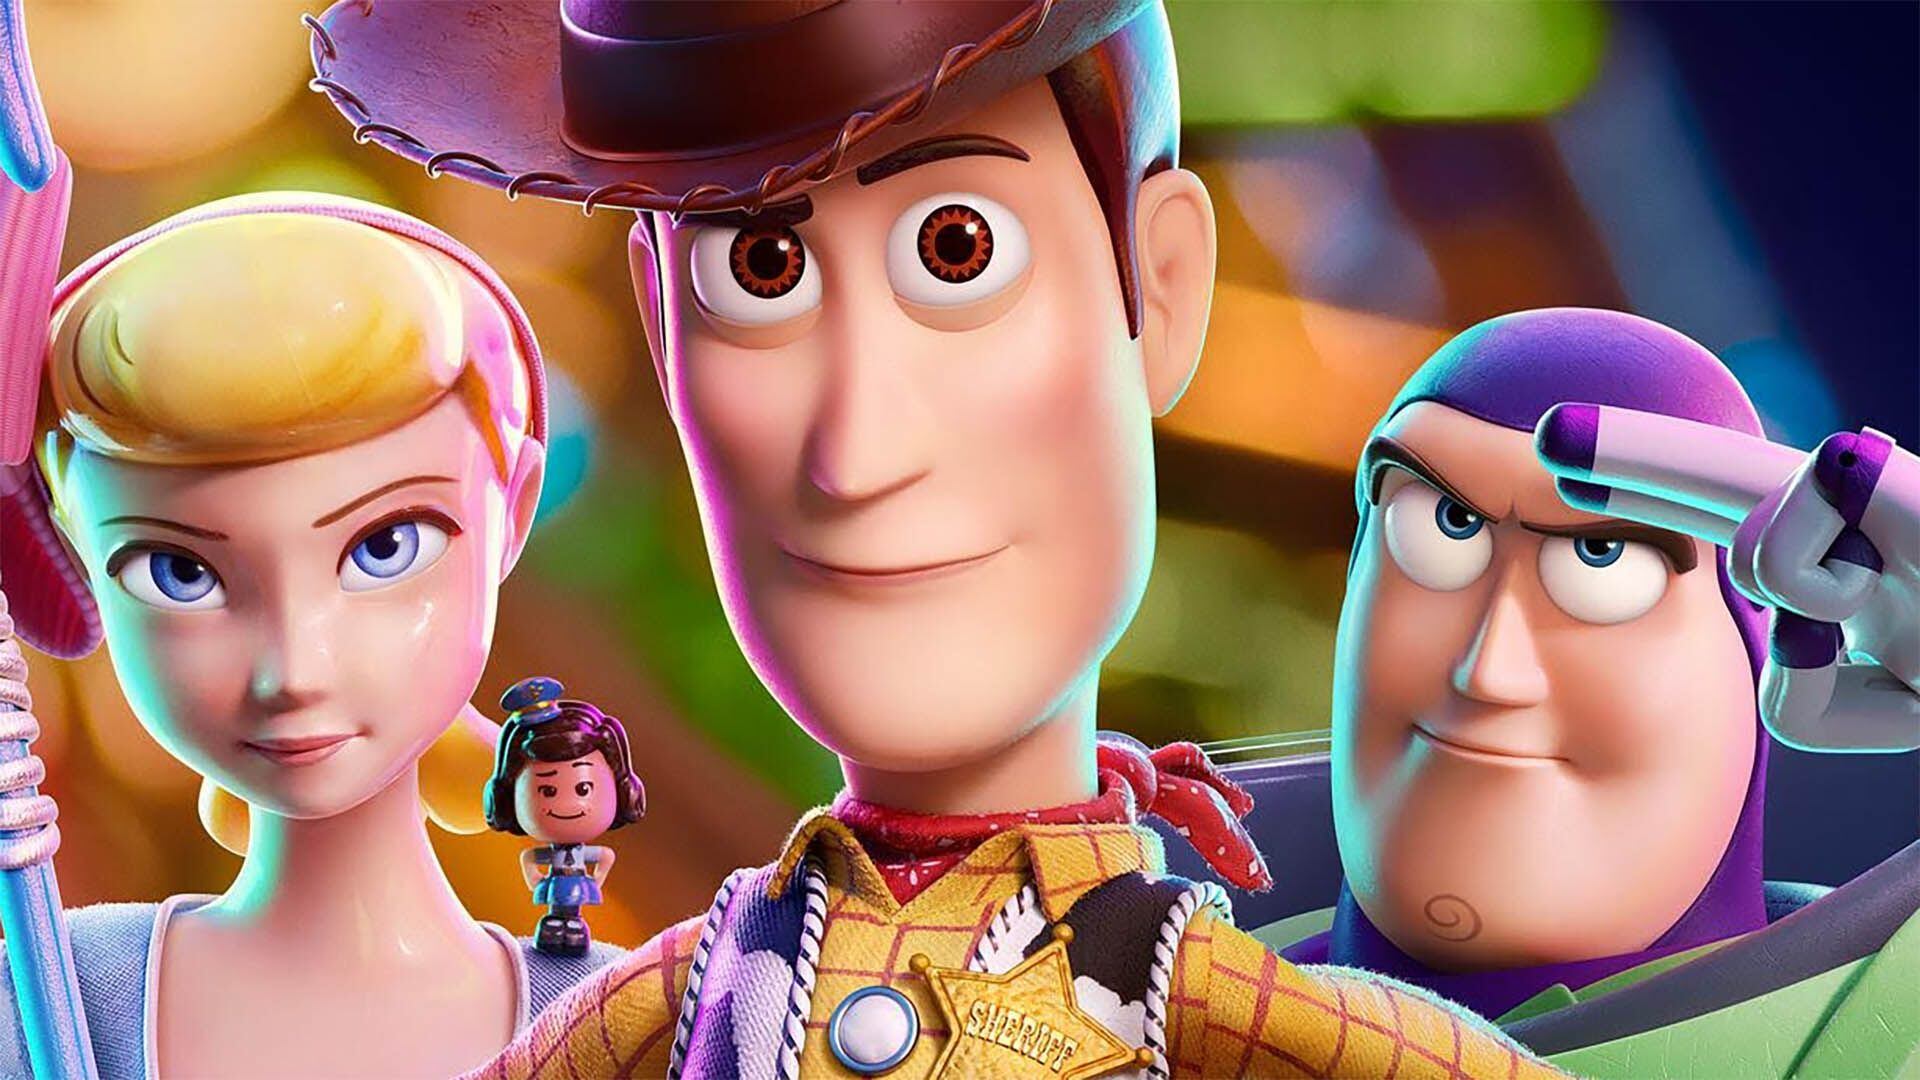 La cuarta película llegó en 2019, casi una década después de la tercera entrega. (Pixar)